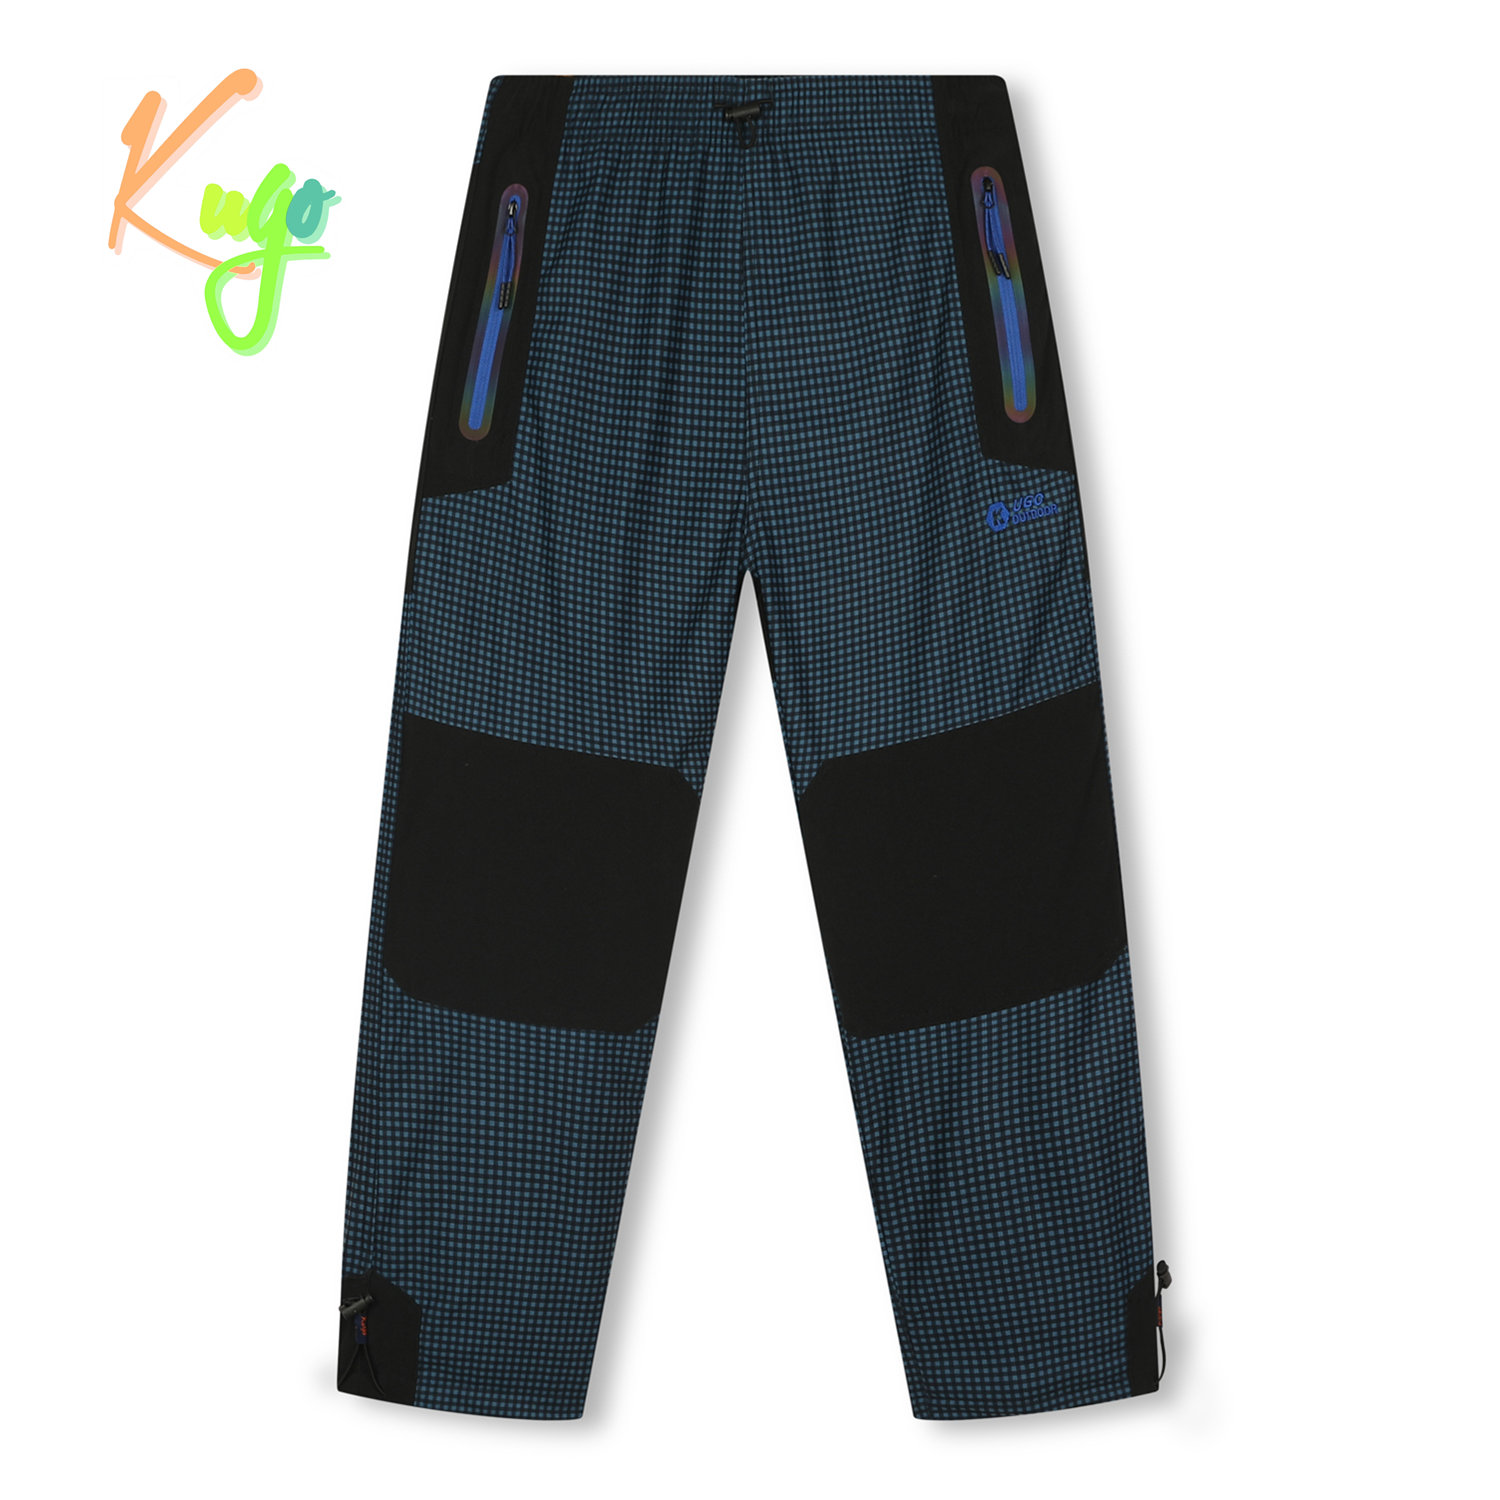 Levně Chlapecké zateplené outdoorové kalhoty - KUGO C7775, petrol/ modré zipy Barva: Petrol